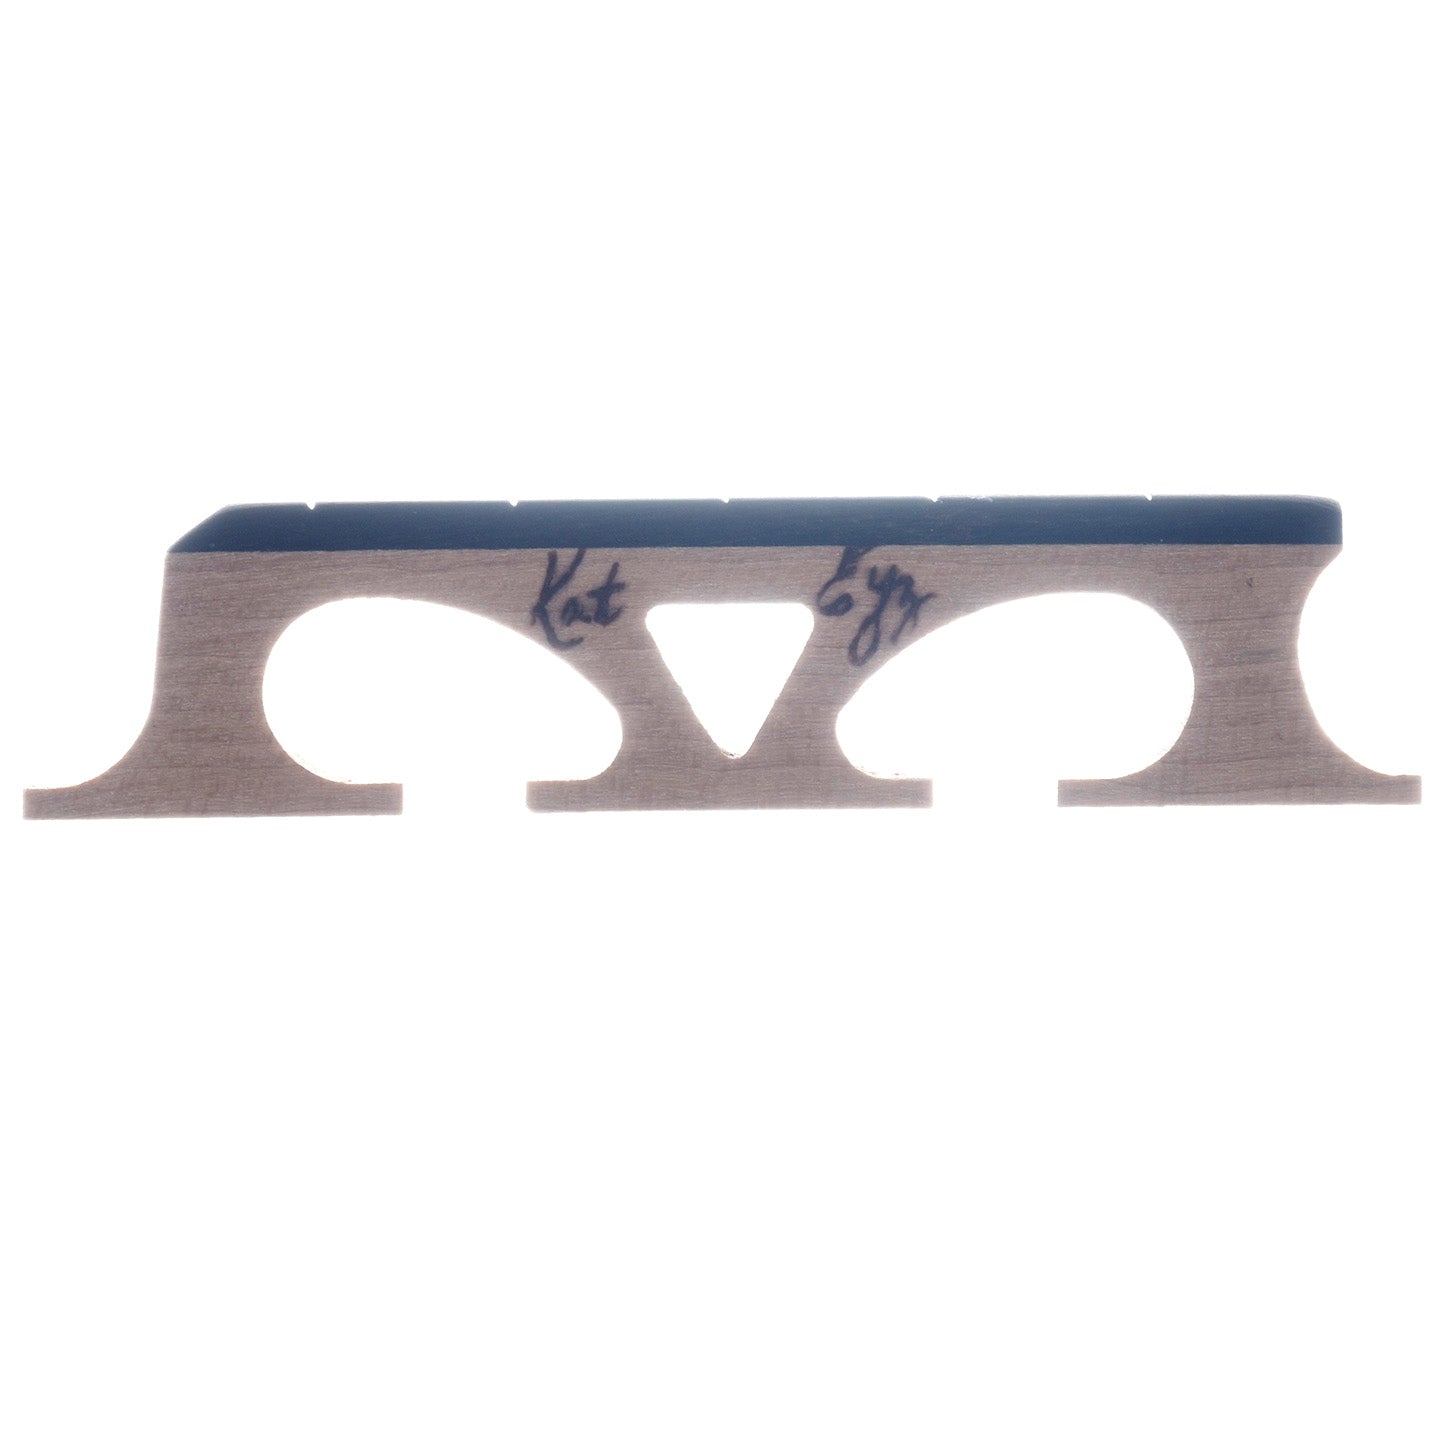 Image 2 of Kat Eyz Old Wood Banjo Bridge, Crowe Spaced, .656" High - SKU# KEBB1-CR-656 : Product Type Accessories & Parts : Elderly Instruments